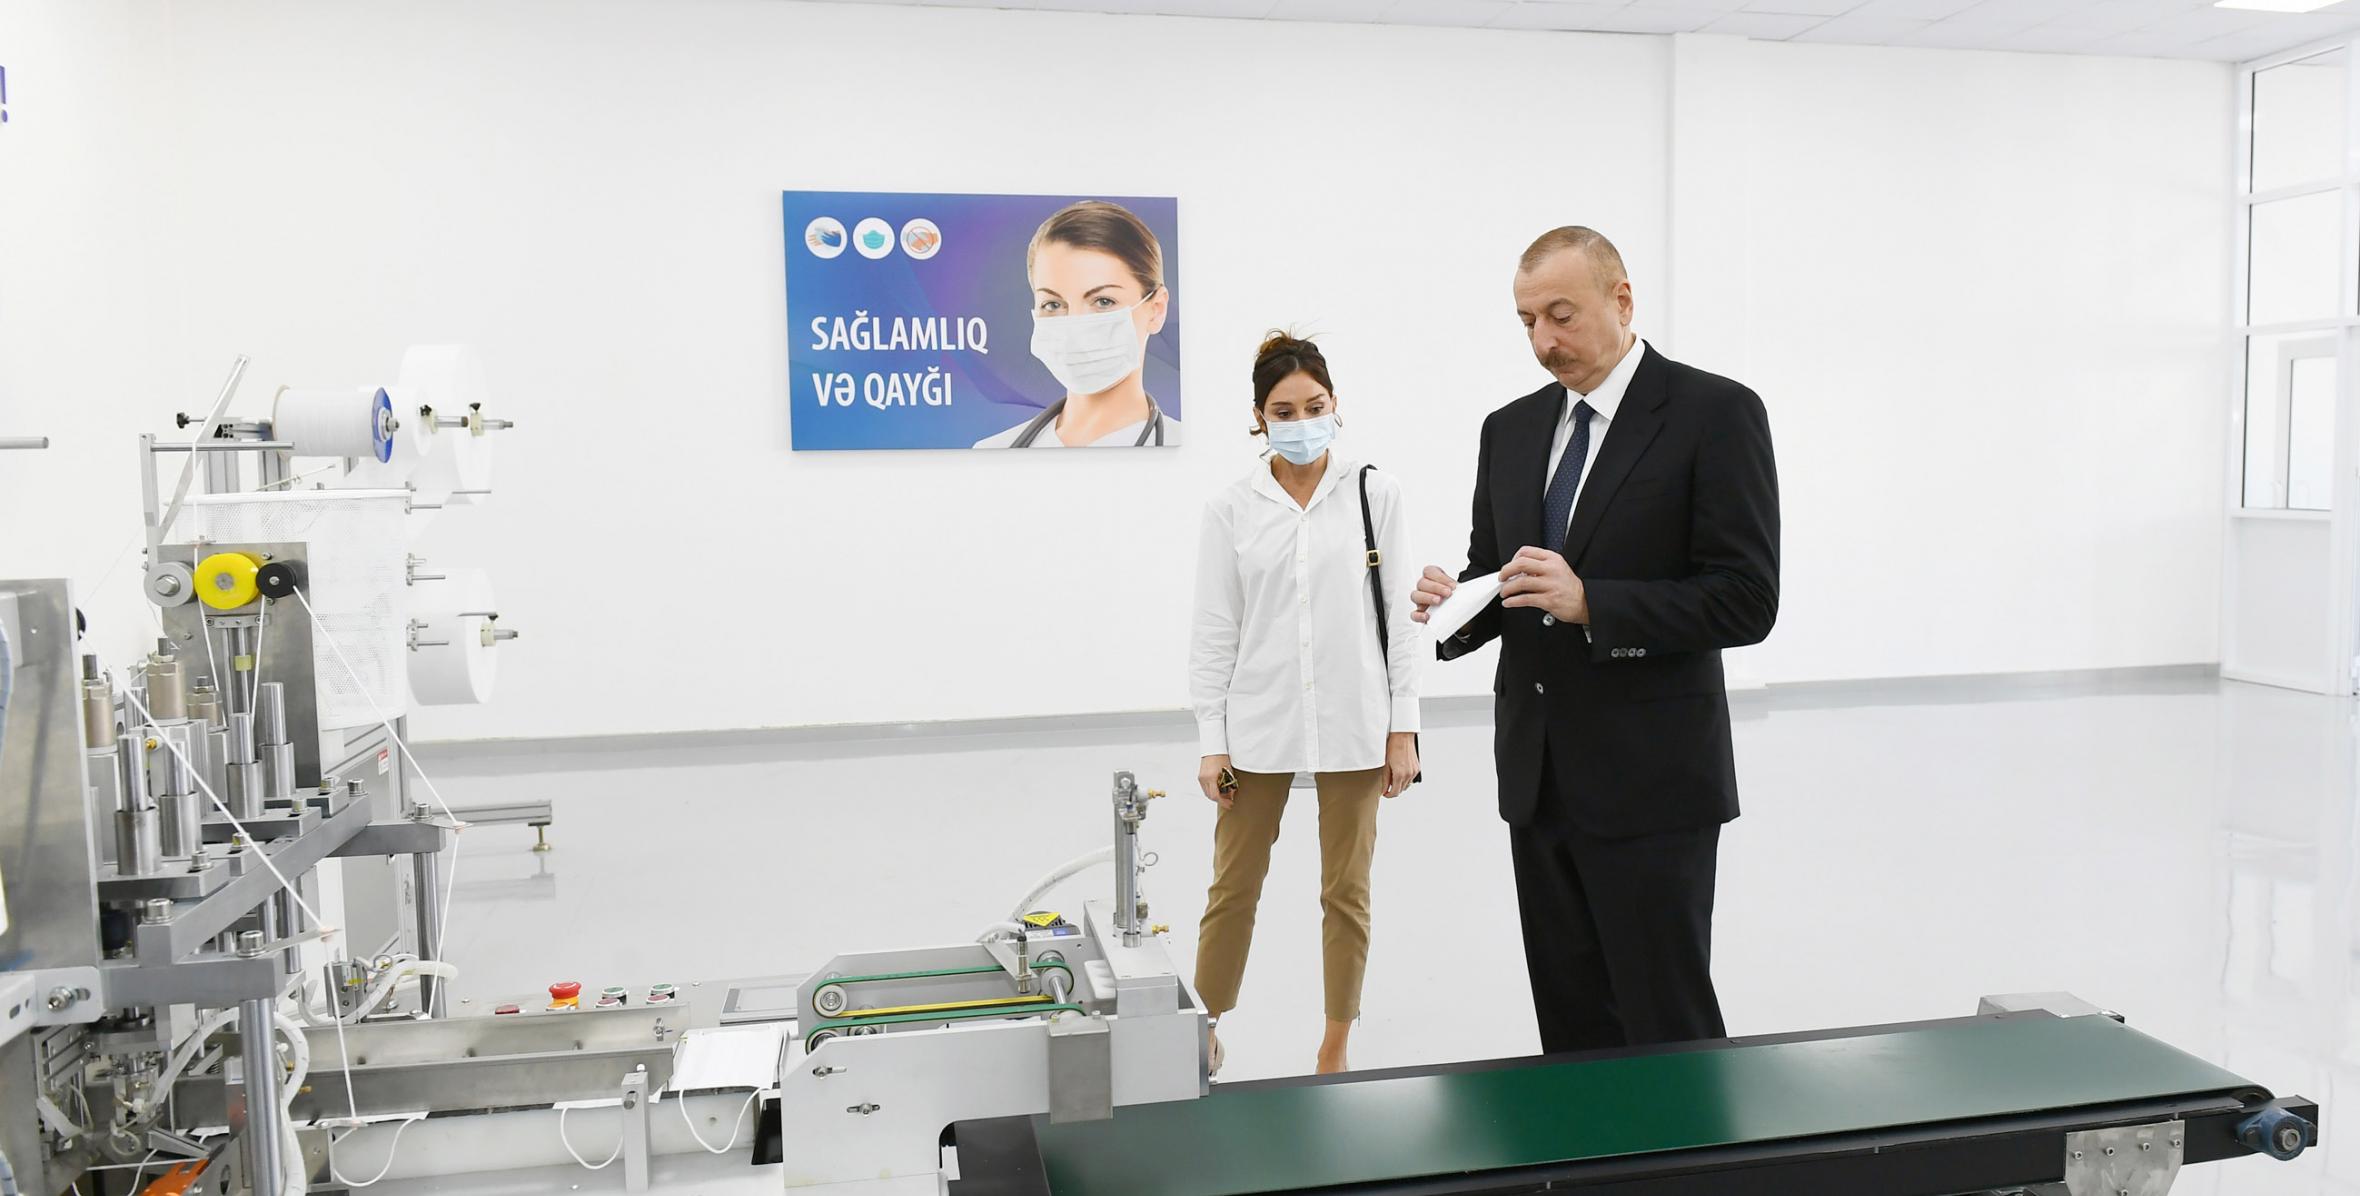 Ильхам Алиев принял участие в открытии фабрики медицинских масок и функционирующего при швейной фабрике предприятия по производству защитных комбинезонов OOO Gilan Tekstil Park